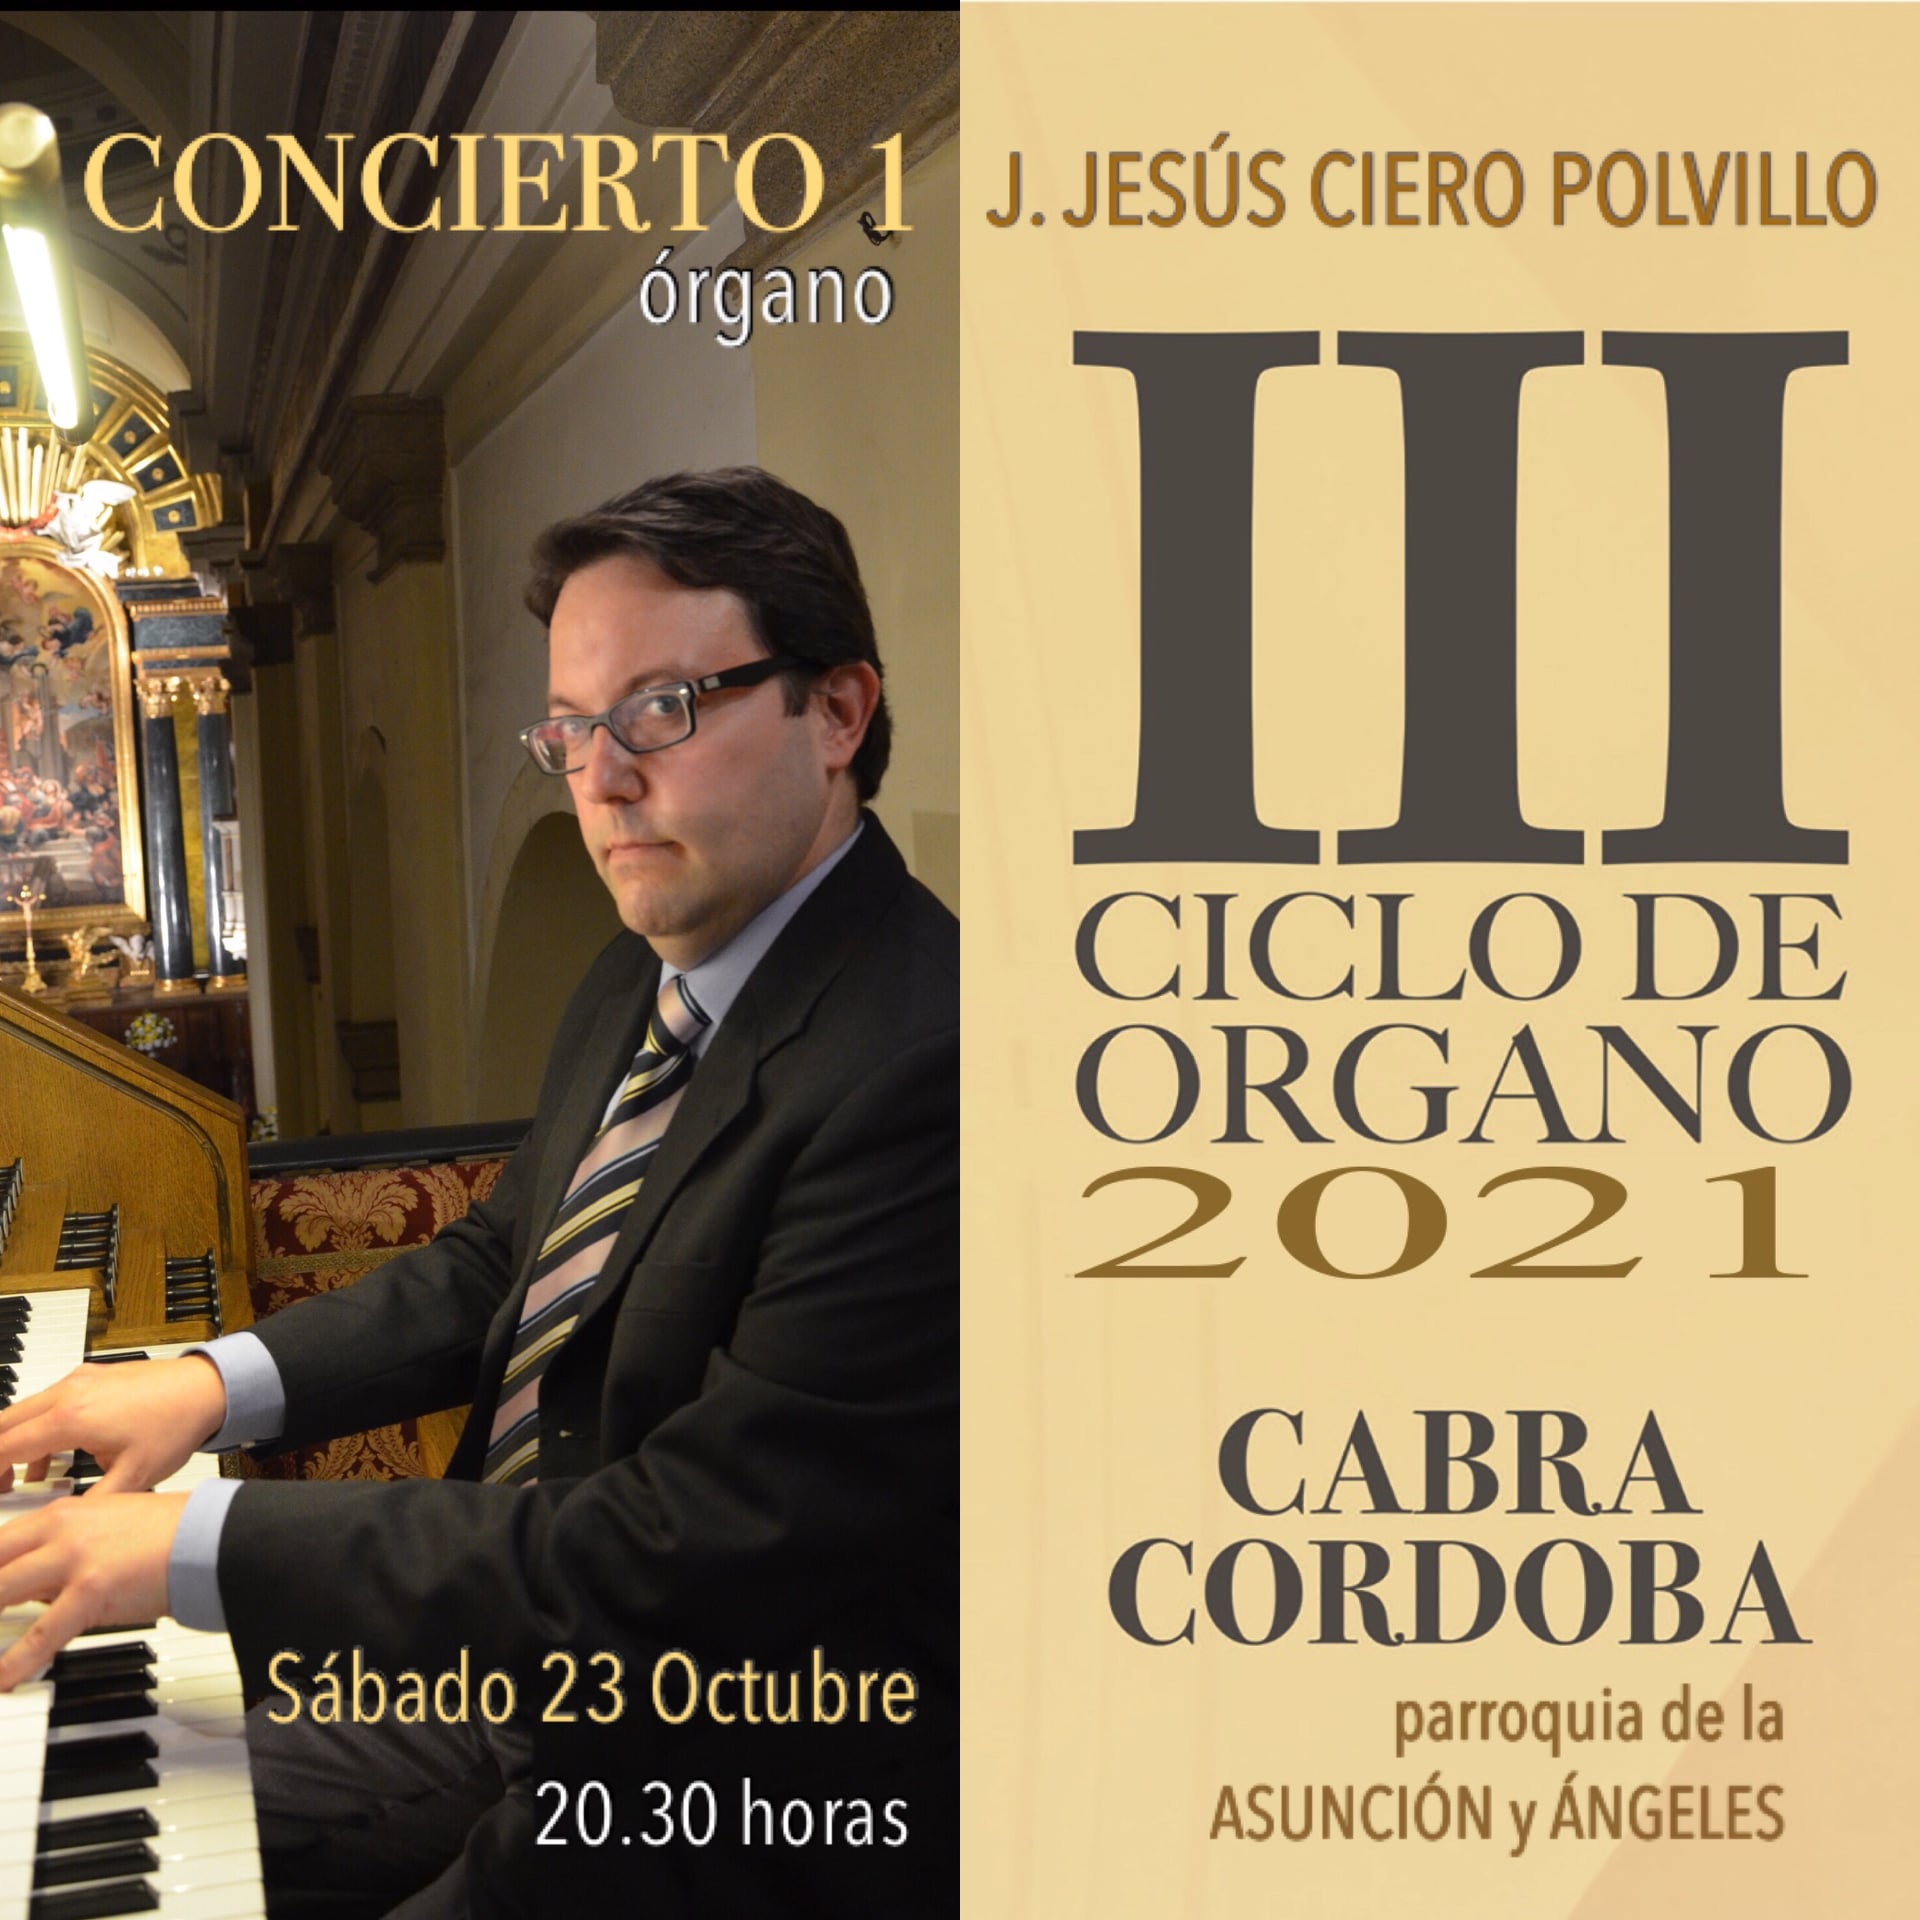 III Ciclo de örgano 2021 Parroquia Asunción y Ángeles, interprete J.Jesús Ciero Polvillo, Cabra octubre 2021